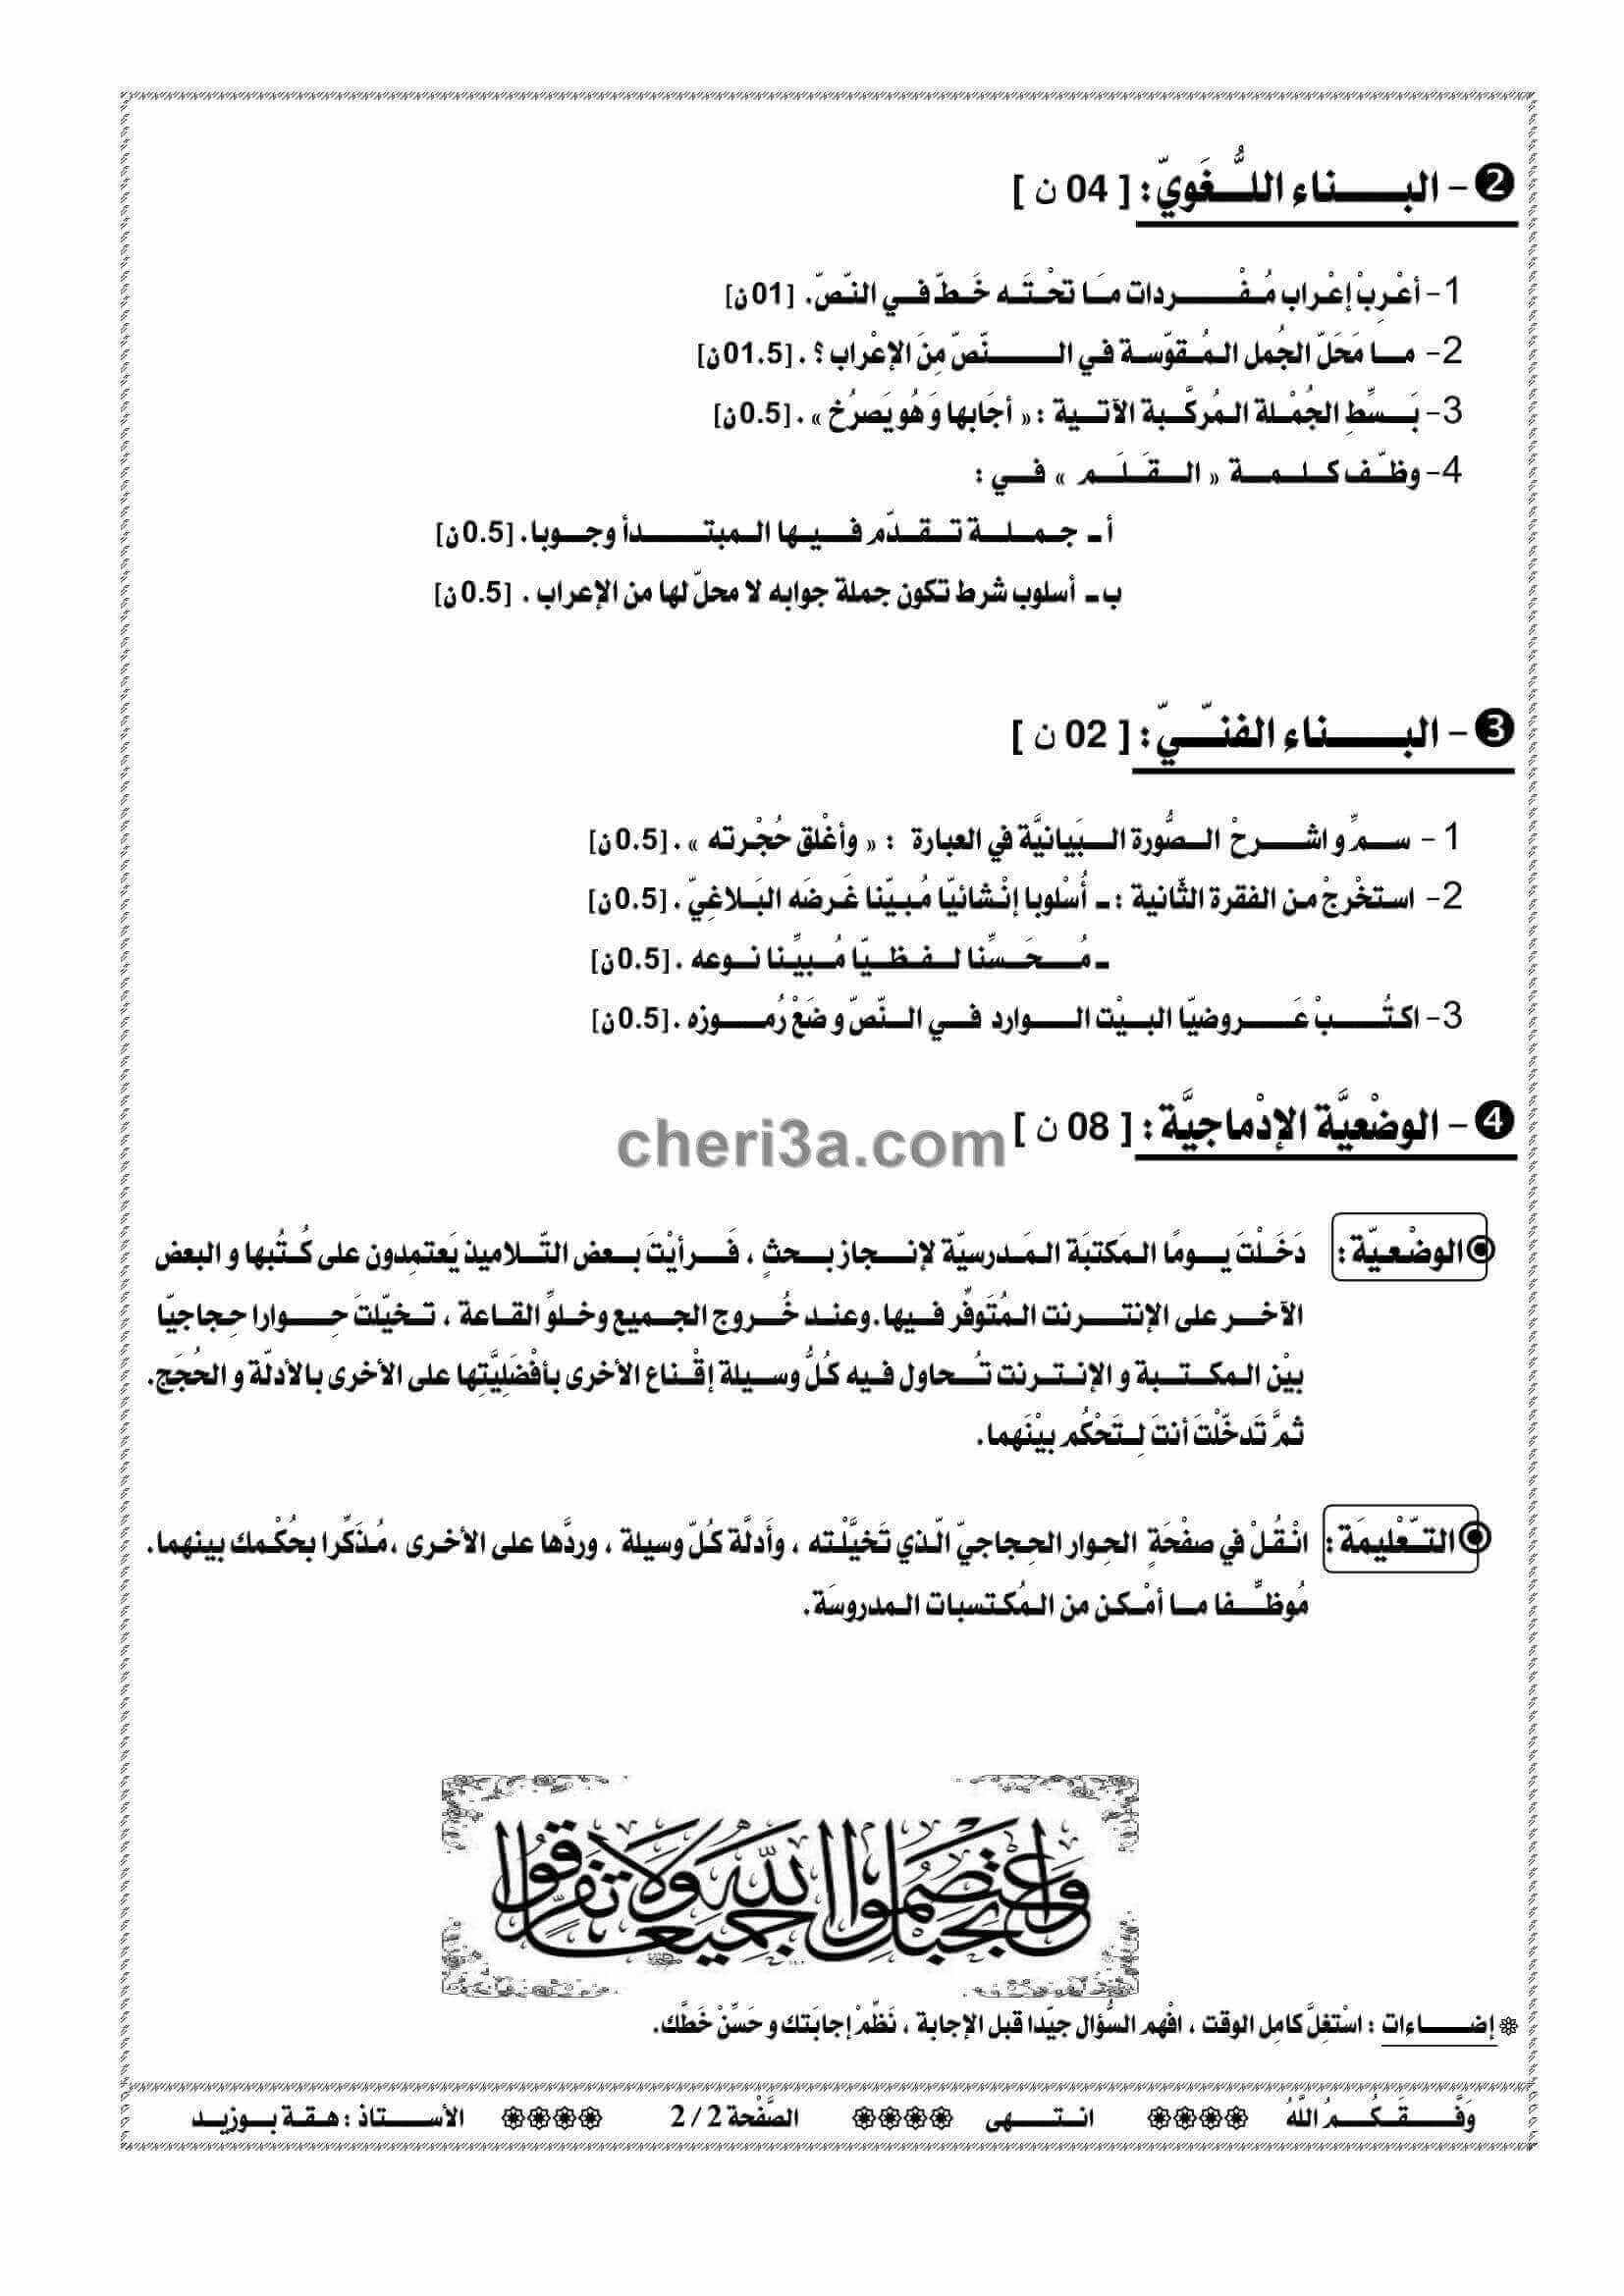 اختبار الفصل الاول للسنة الرابعة متوسط في اللغة العربية النموذج 7